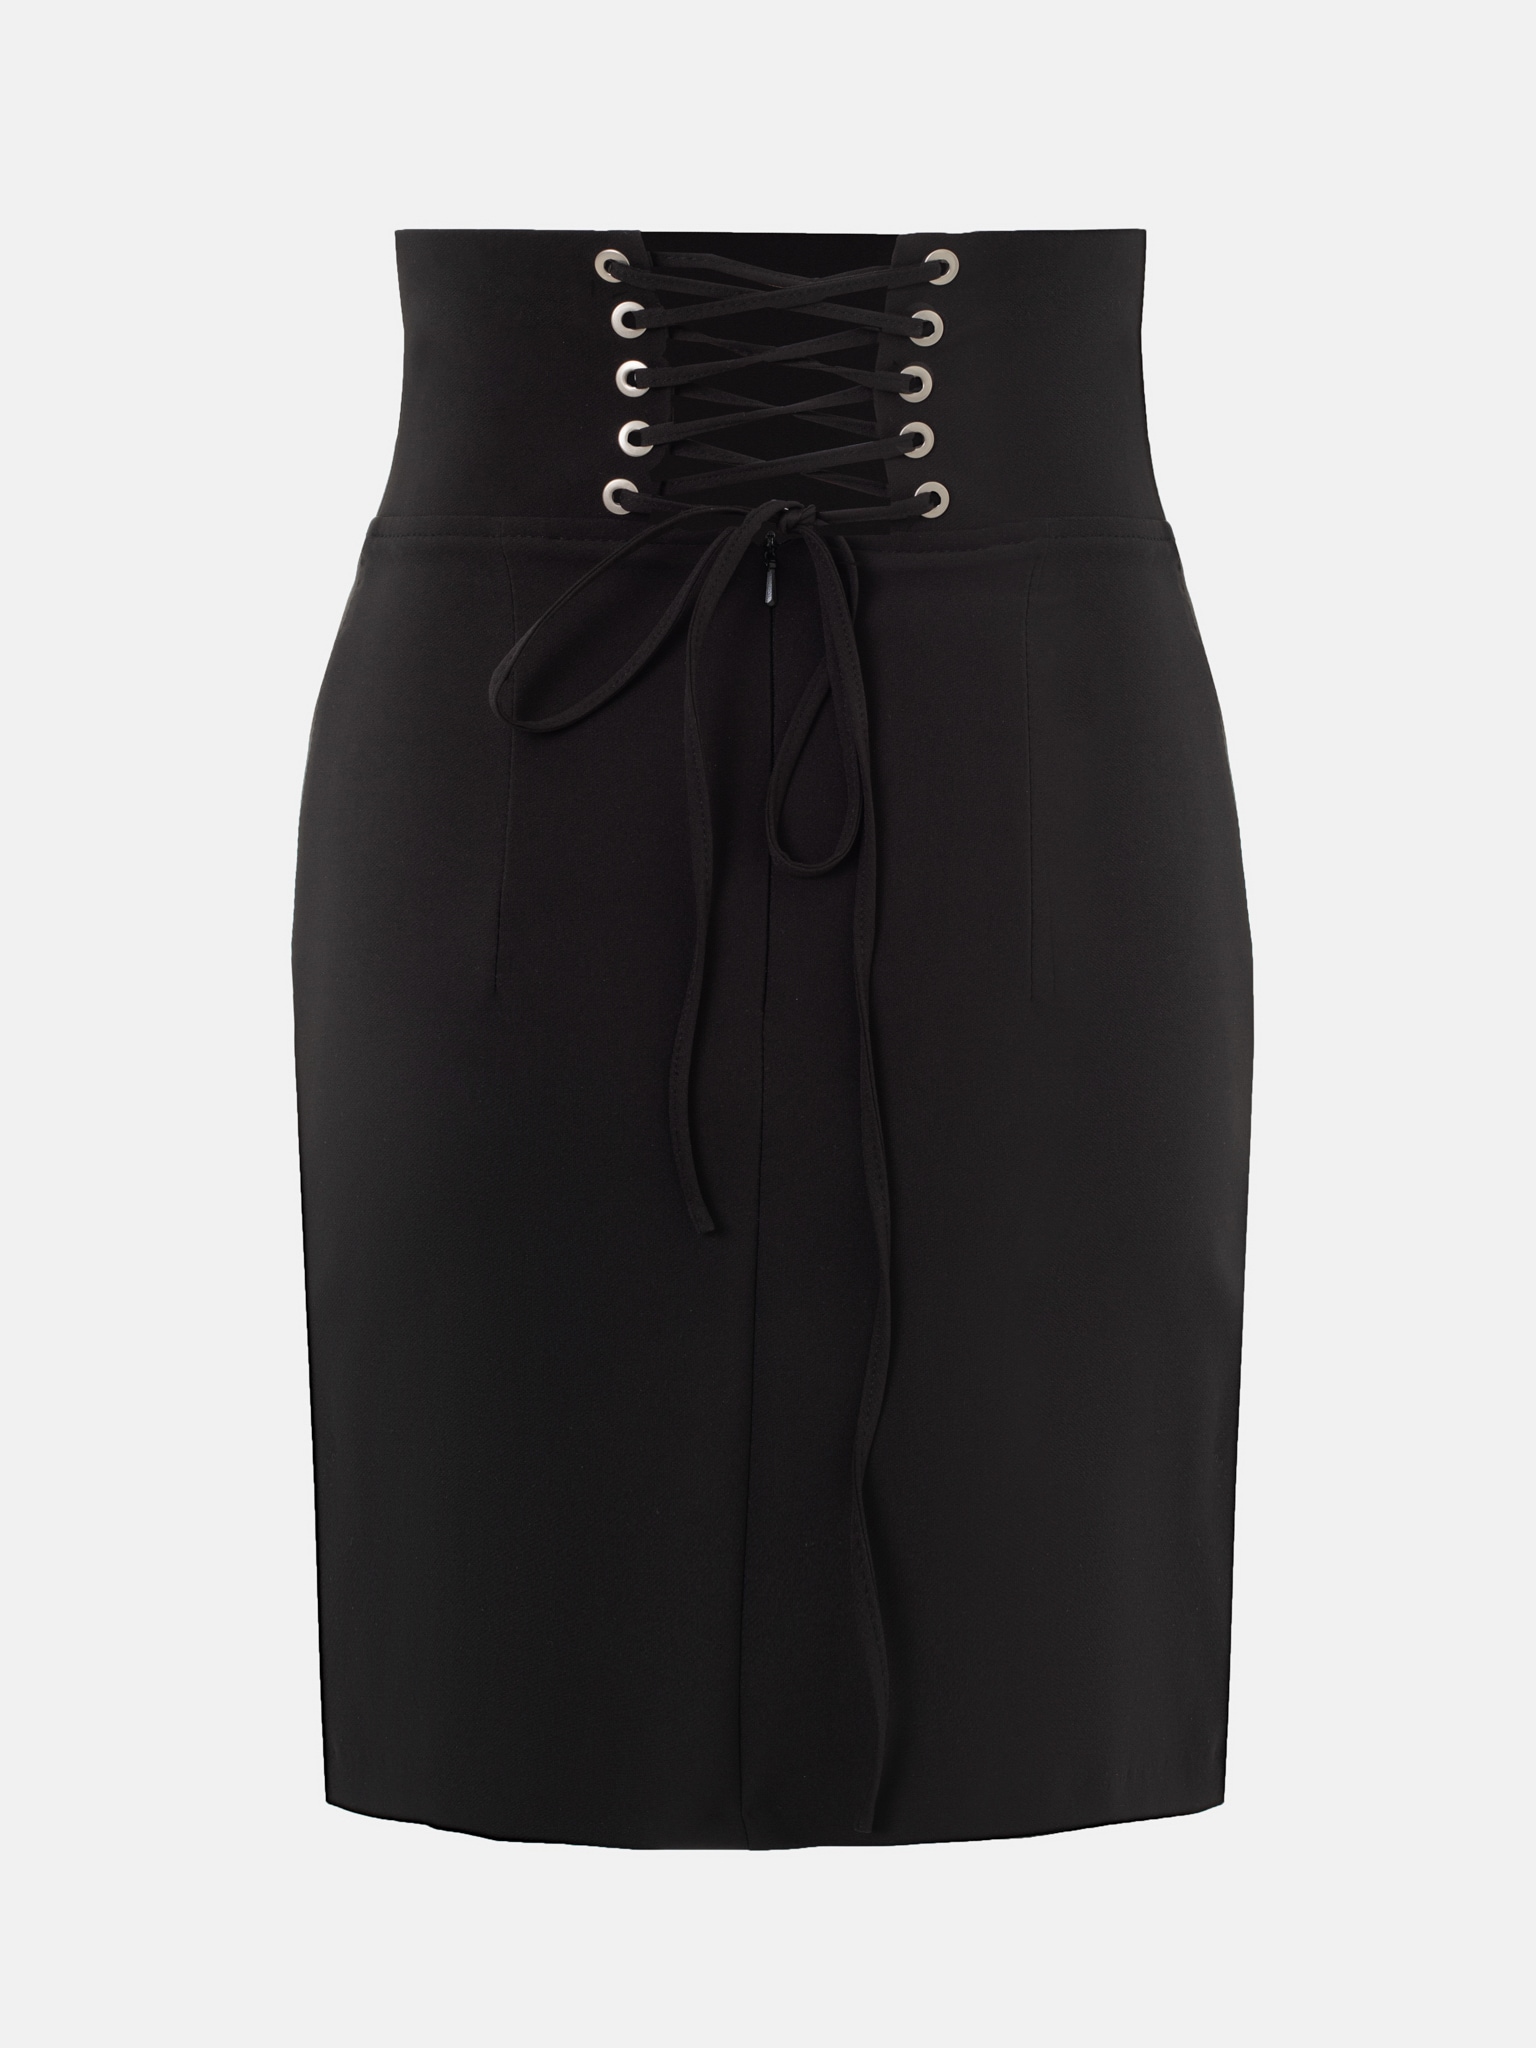 Express Womens High Waisted Corset Pencil Skirt sz 12 NWT Black